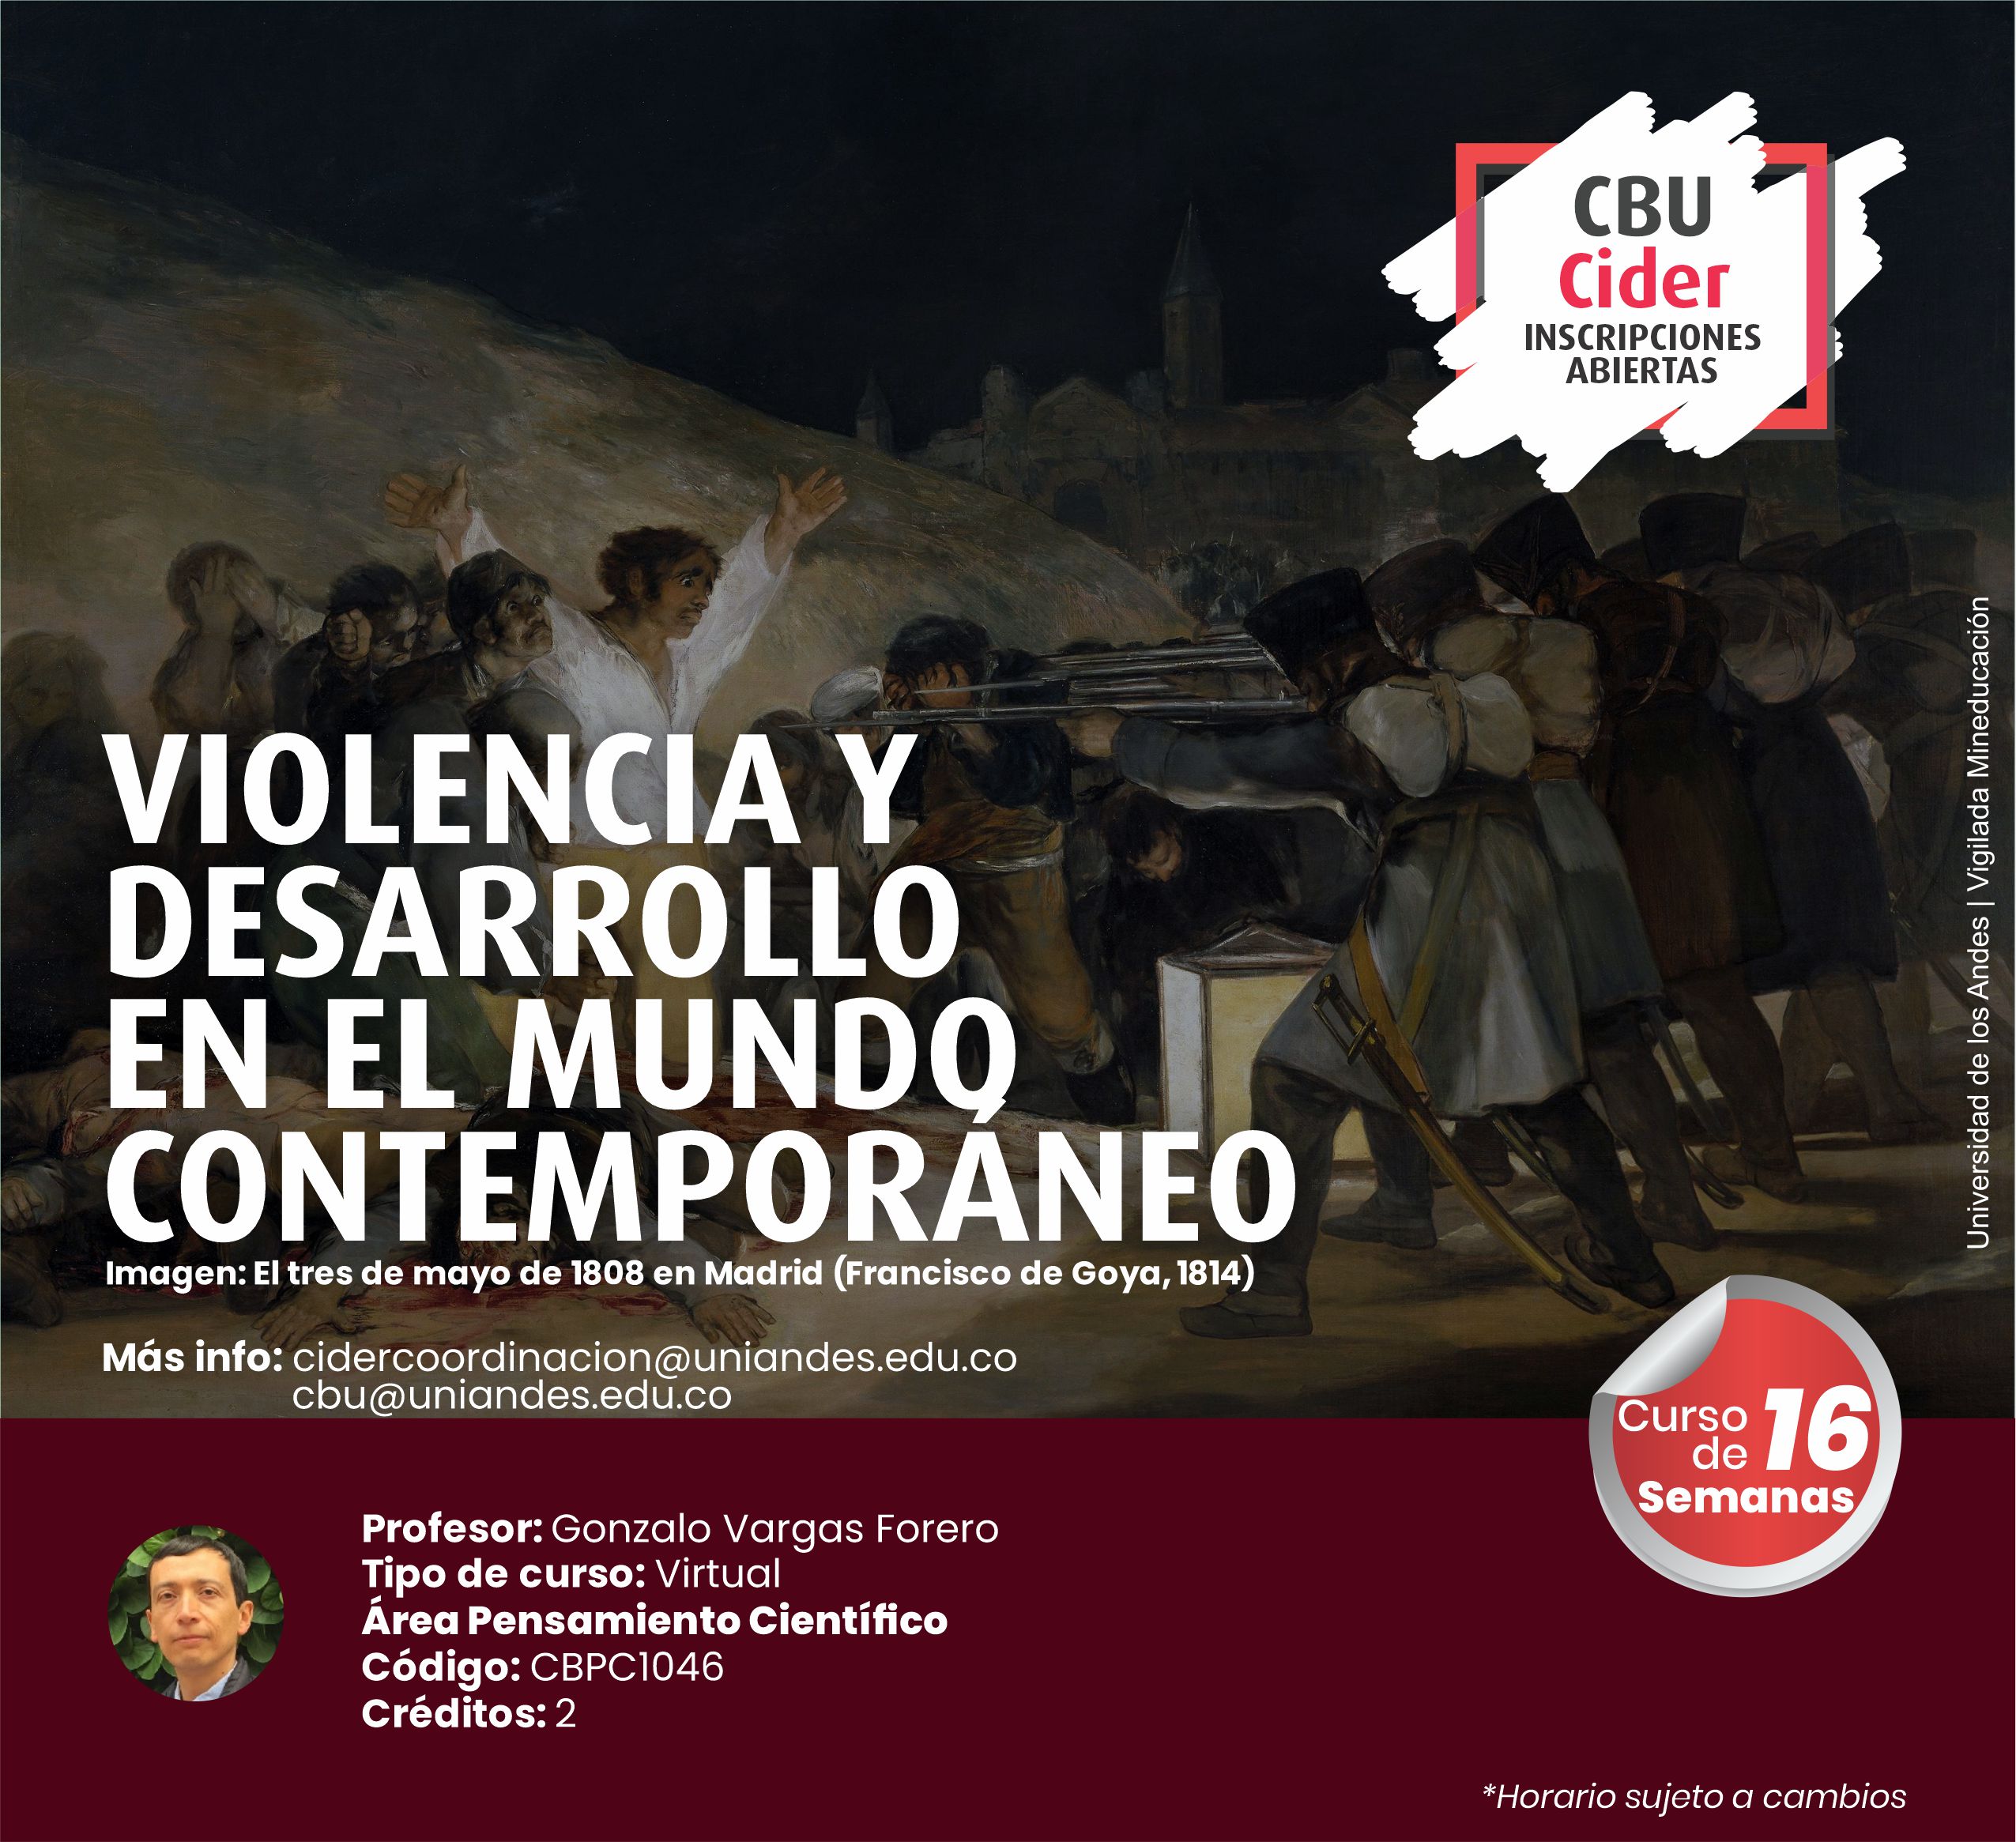 CBU: Violencia y desarrollo en el mundo contemporáneo- Cider | Uniandes